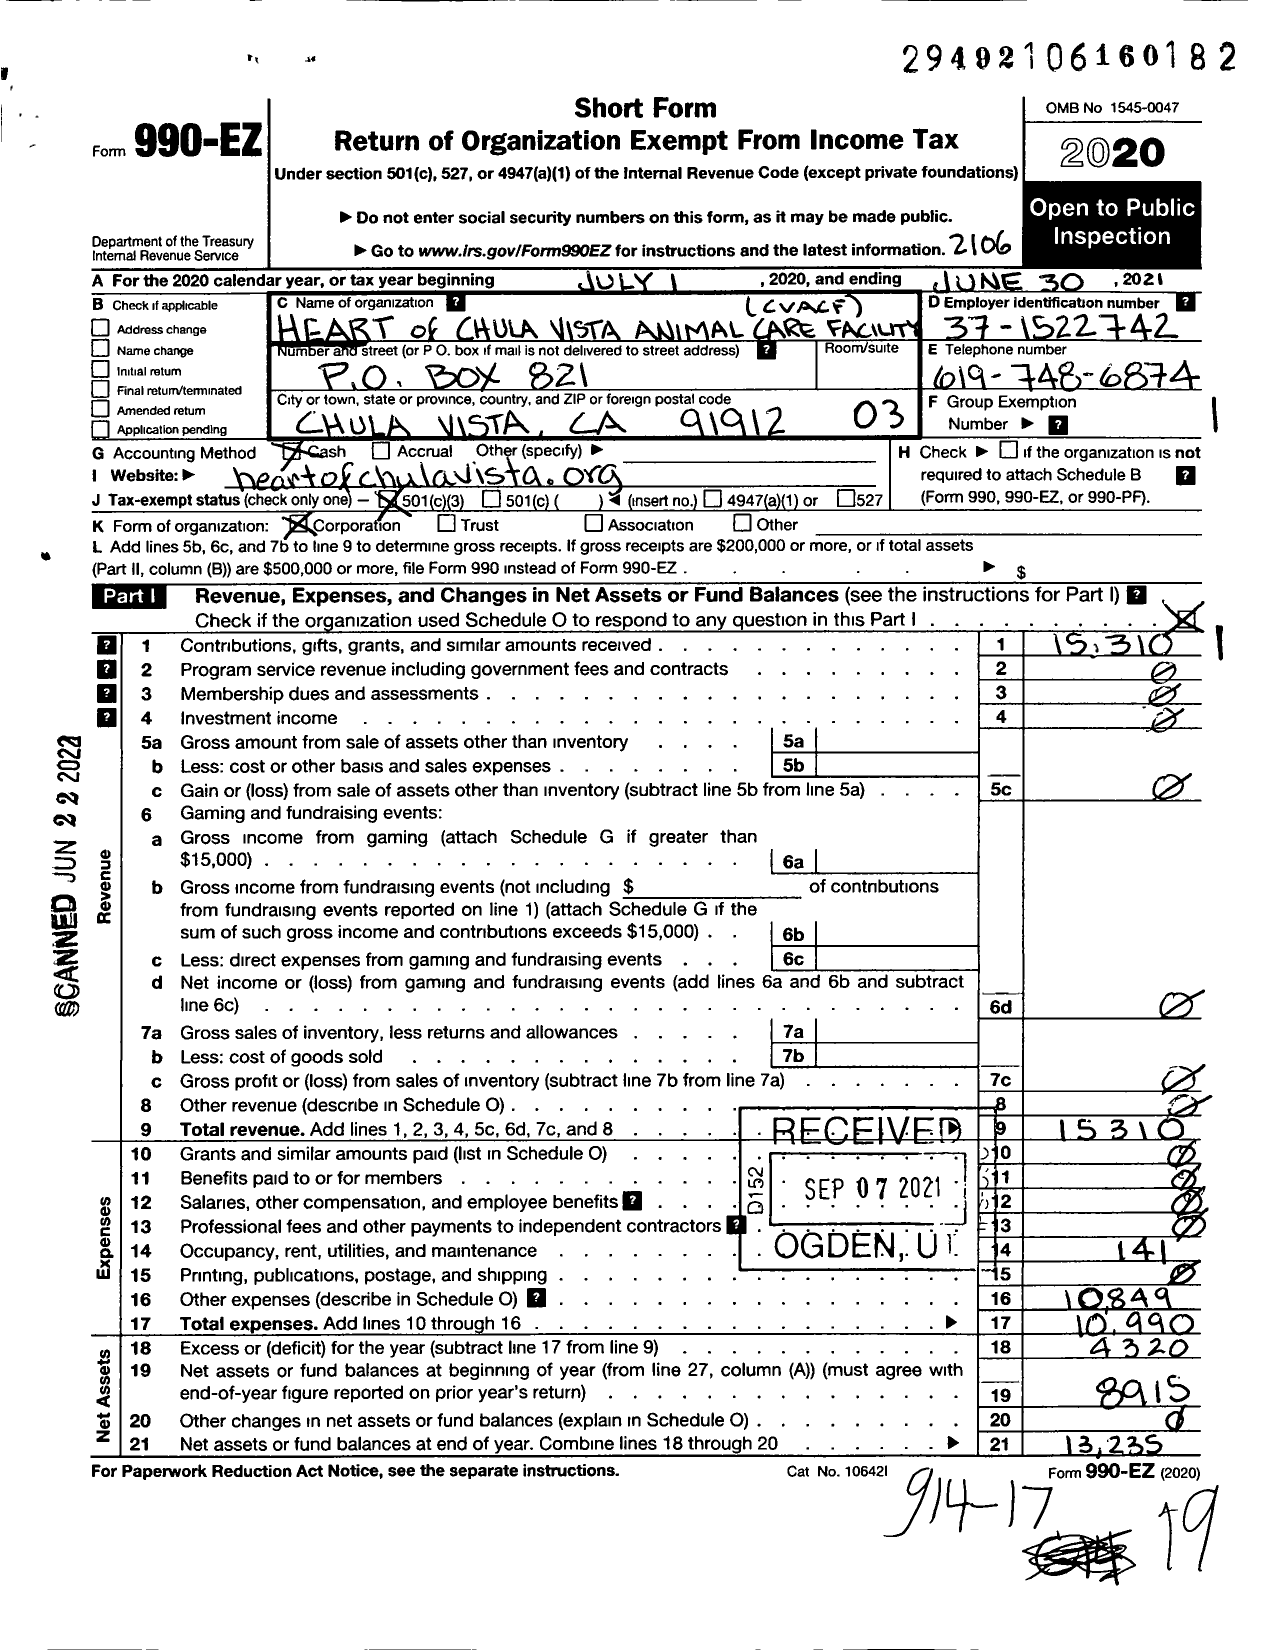 Image of first page of 2020 Form 990EZ for H E A R T of Chula Vista Animal Care Facility